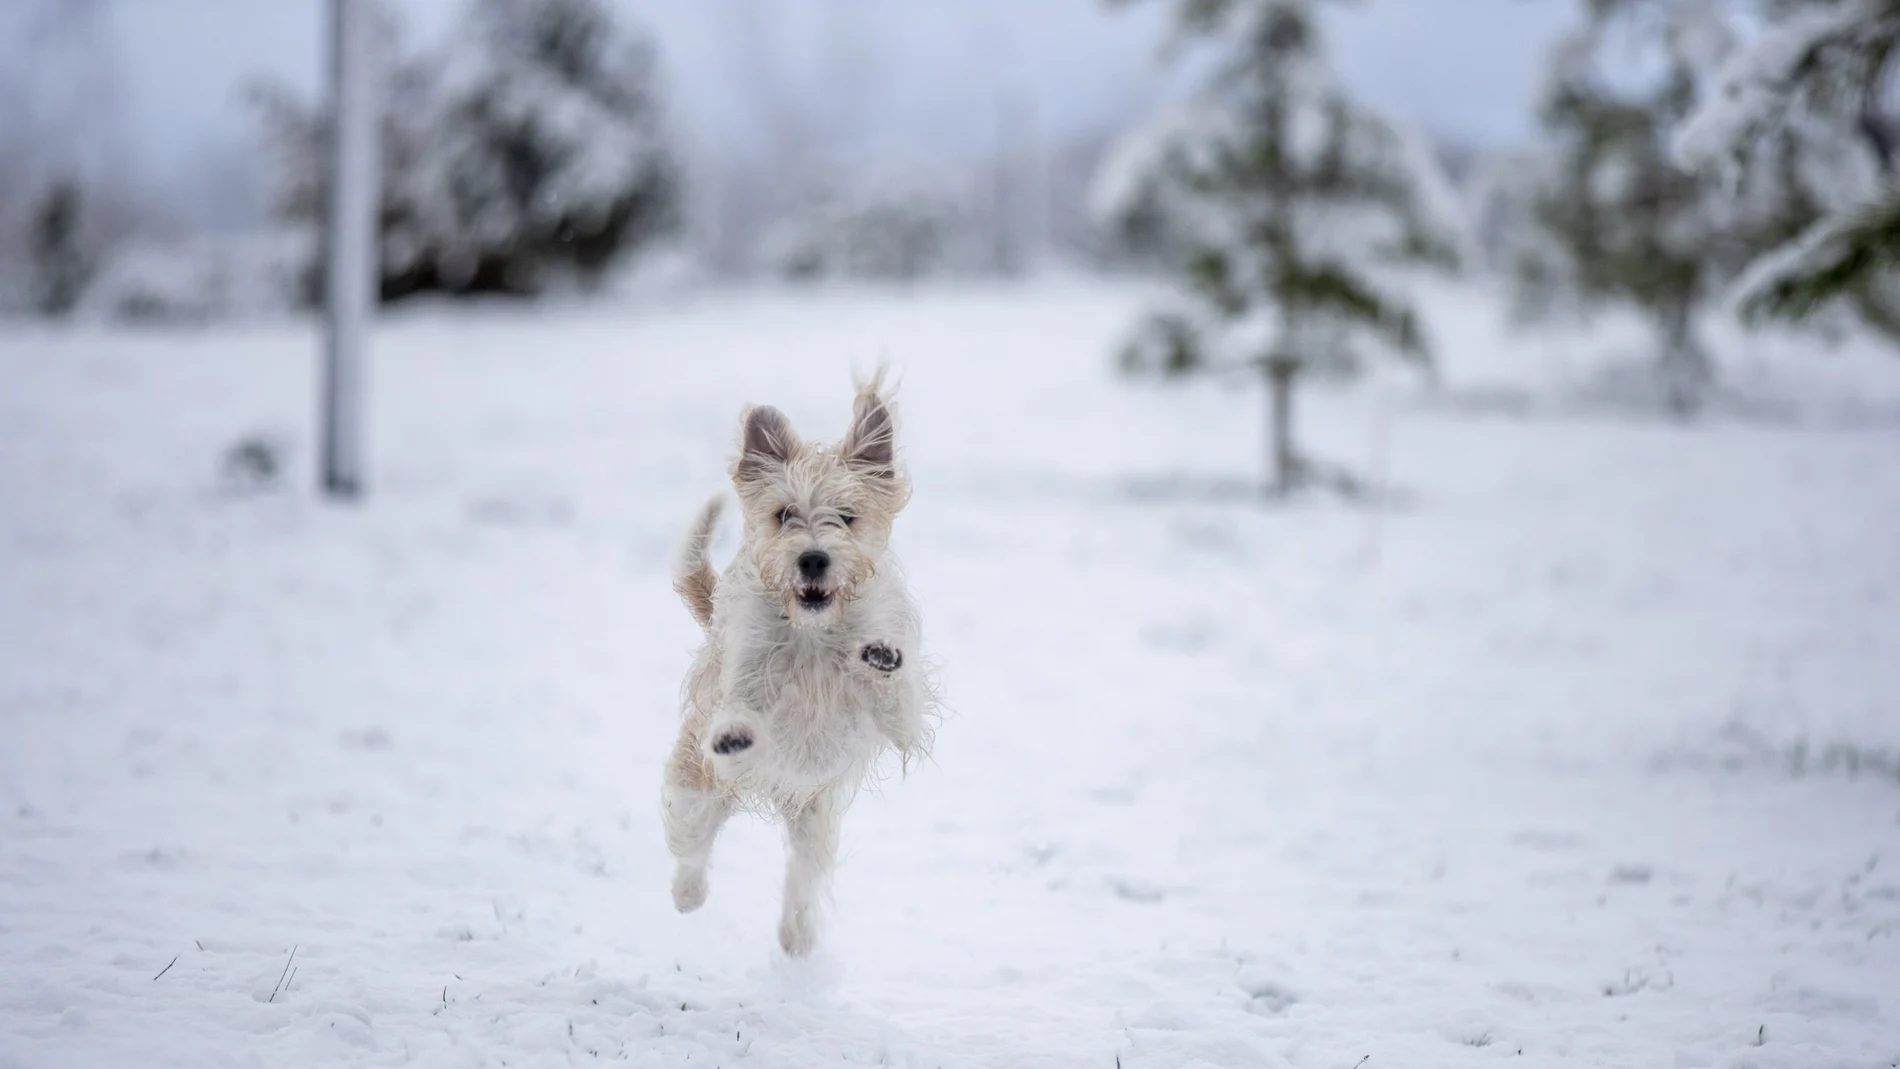 -FOTODELDÍA- GRAFCAV4142. VITORIA, 18/01/2023.-Un perro juega en un parque de Vitoria, ciudad en la que la nieve cae desde primeras horas de esta madrugada. EFE/David Aguilar